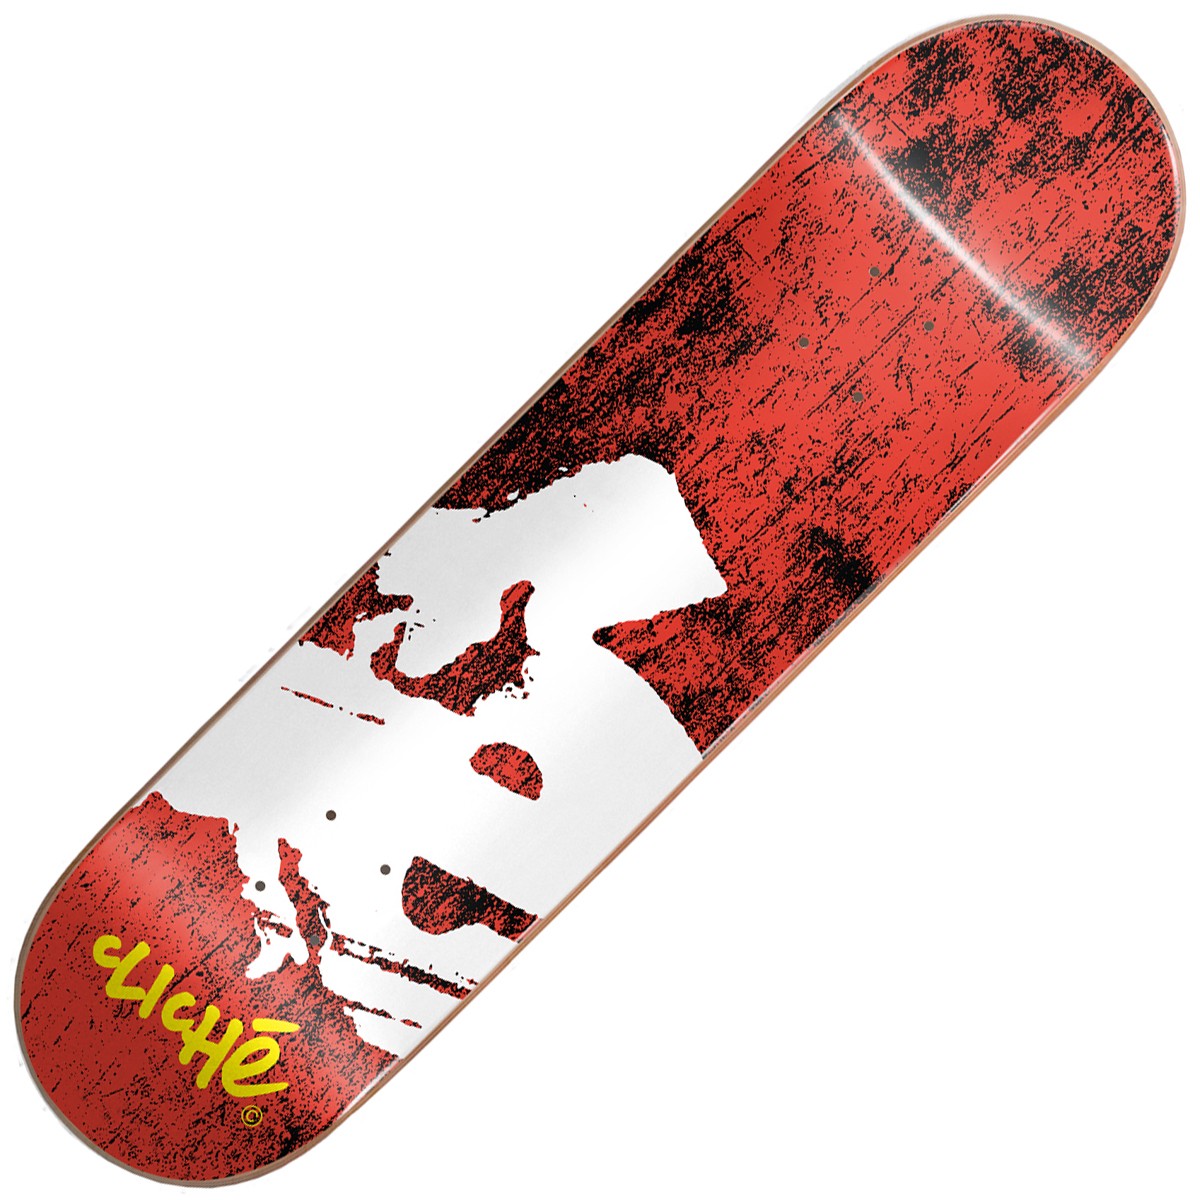 cliche-europe-rhm-red-skateboard-deck